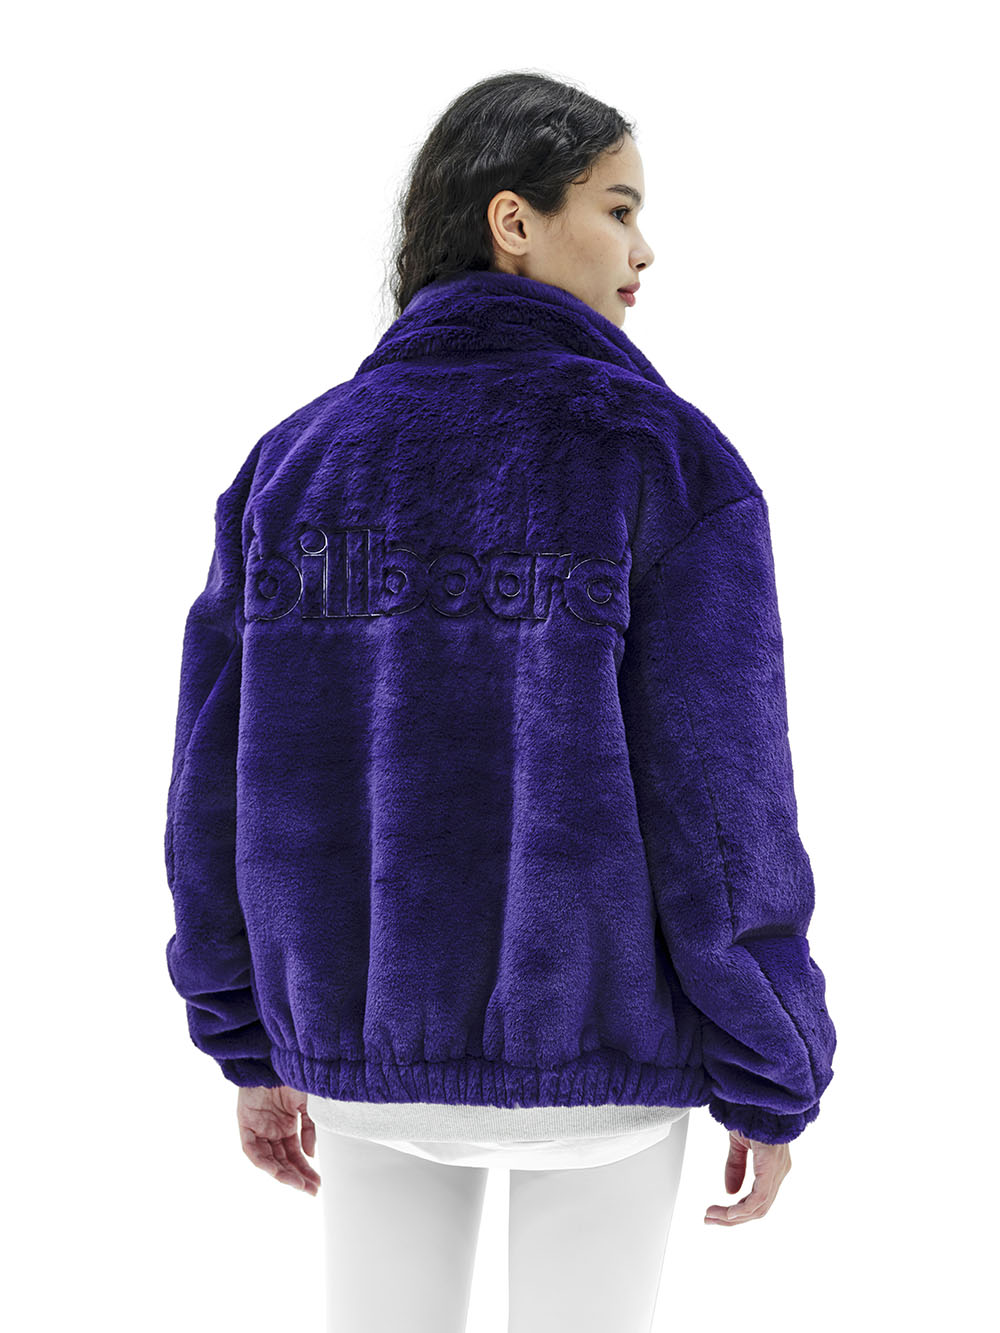 Merrick St Eco Fur Jumper_Purple